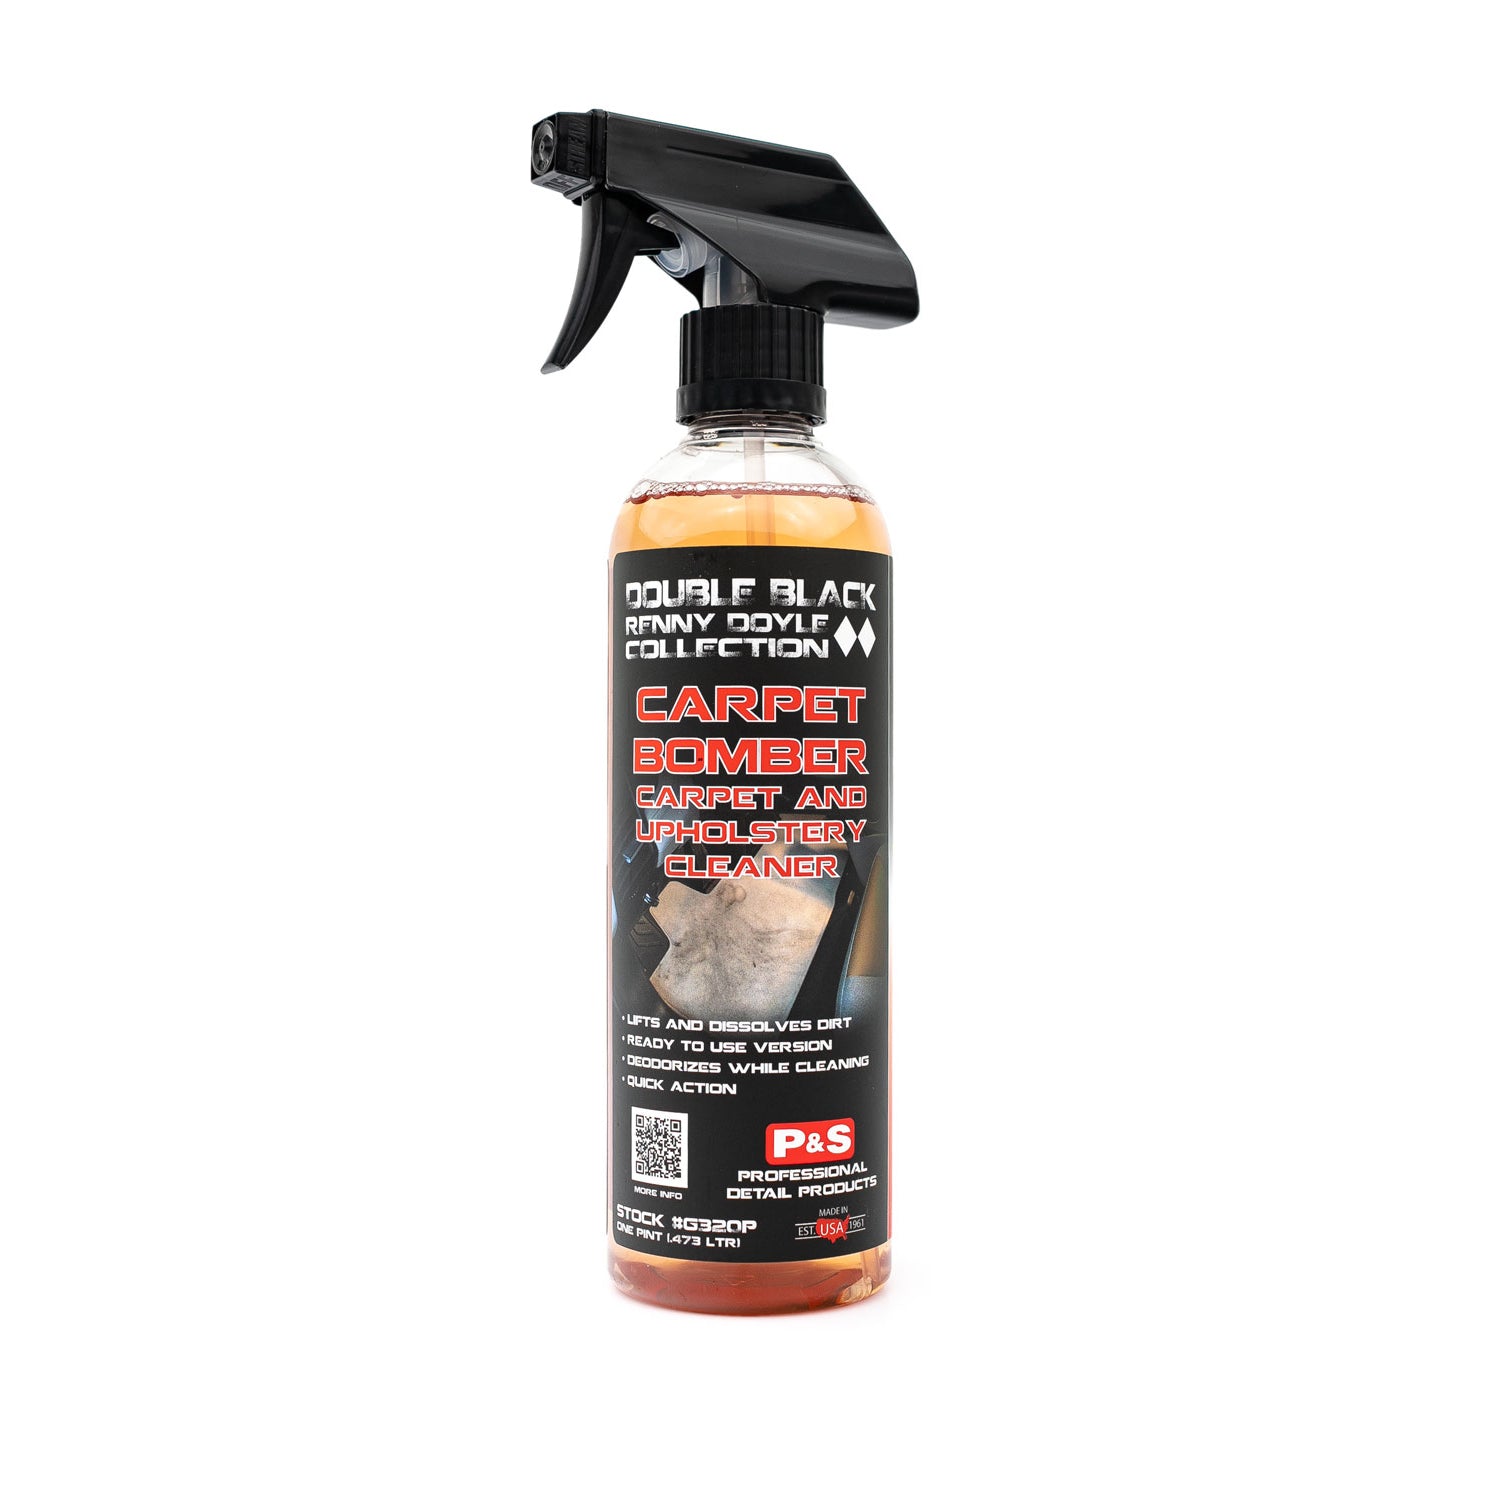 P&S Carpet Bomber & Upholstery Cleaner Gallon & Bottle Combo